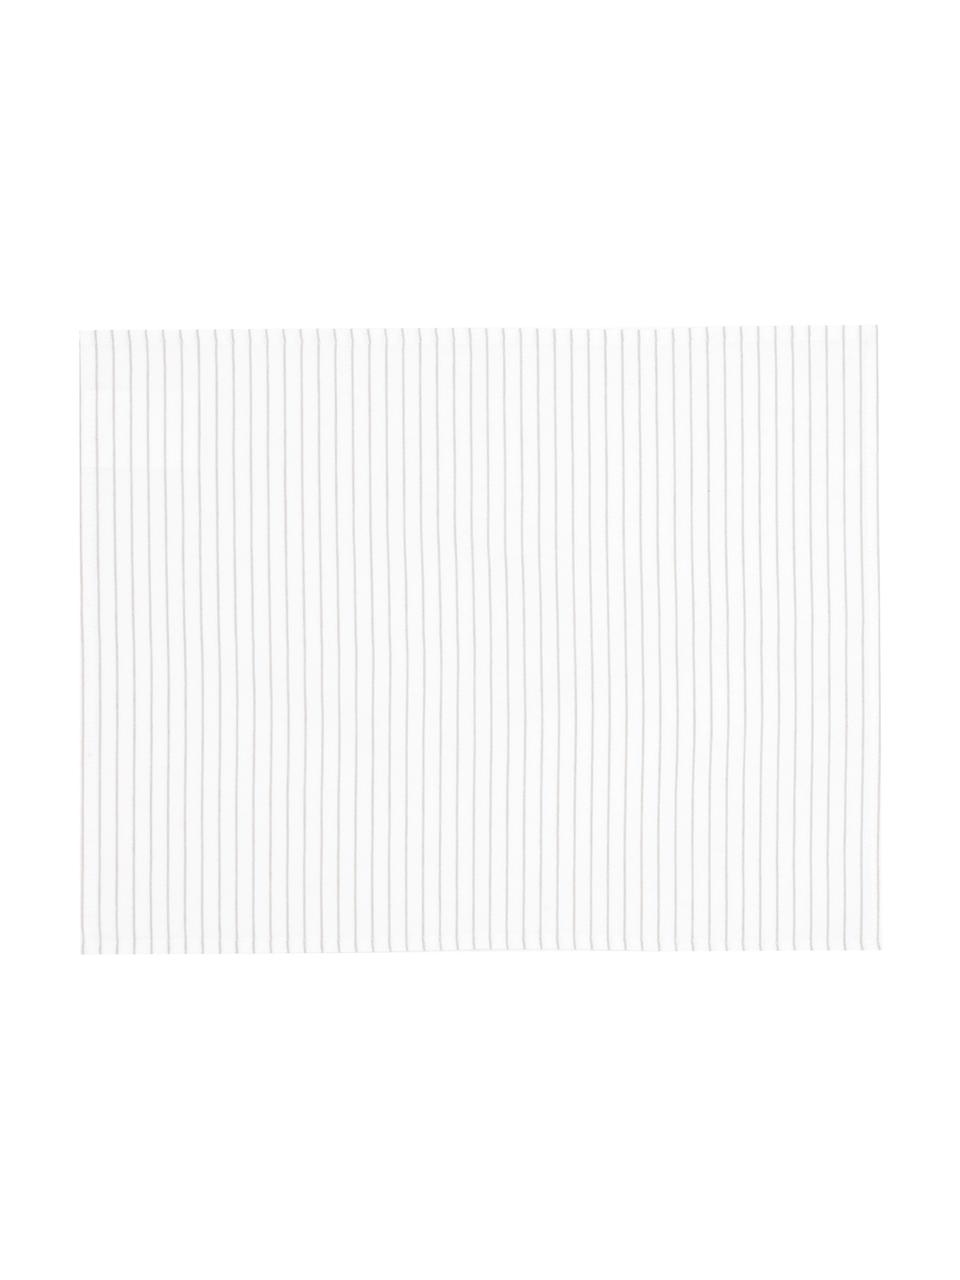 Podkładka z bawełny Nicole, 2 szt., Bawełna, Biały, beżowy, S 40 x D 50 cm